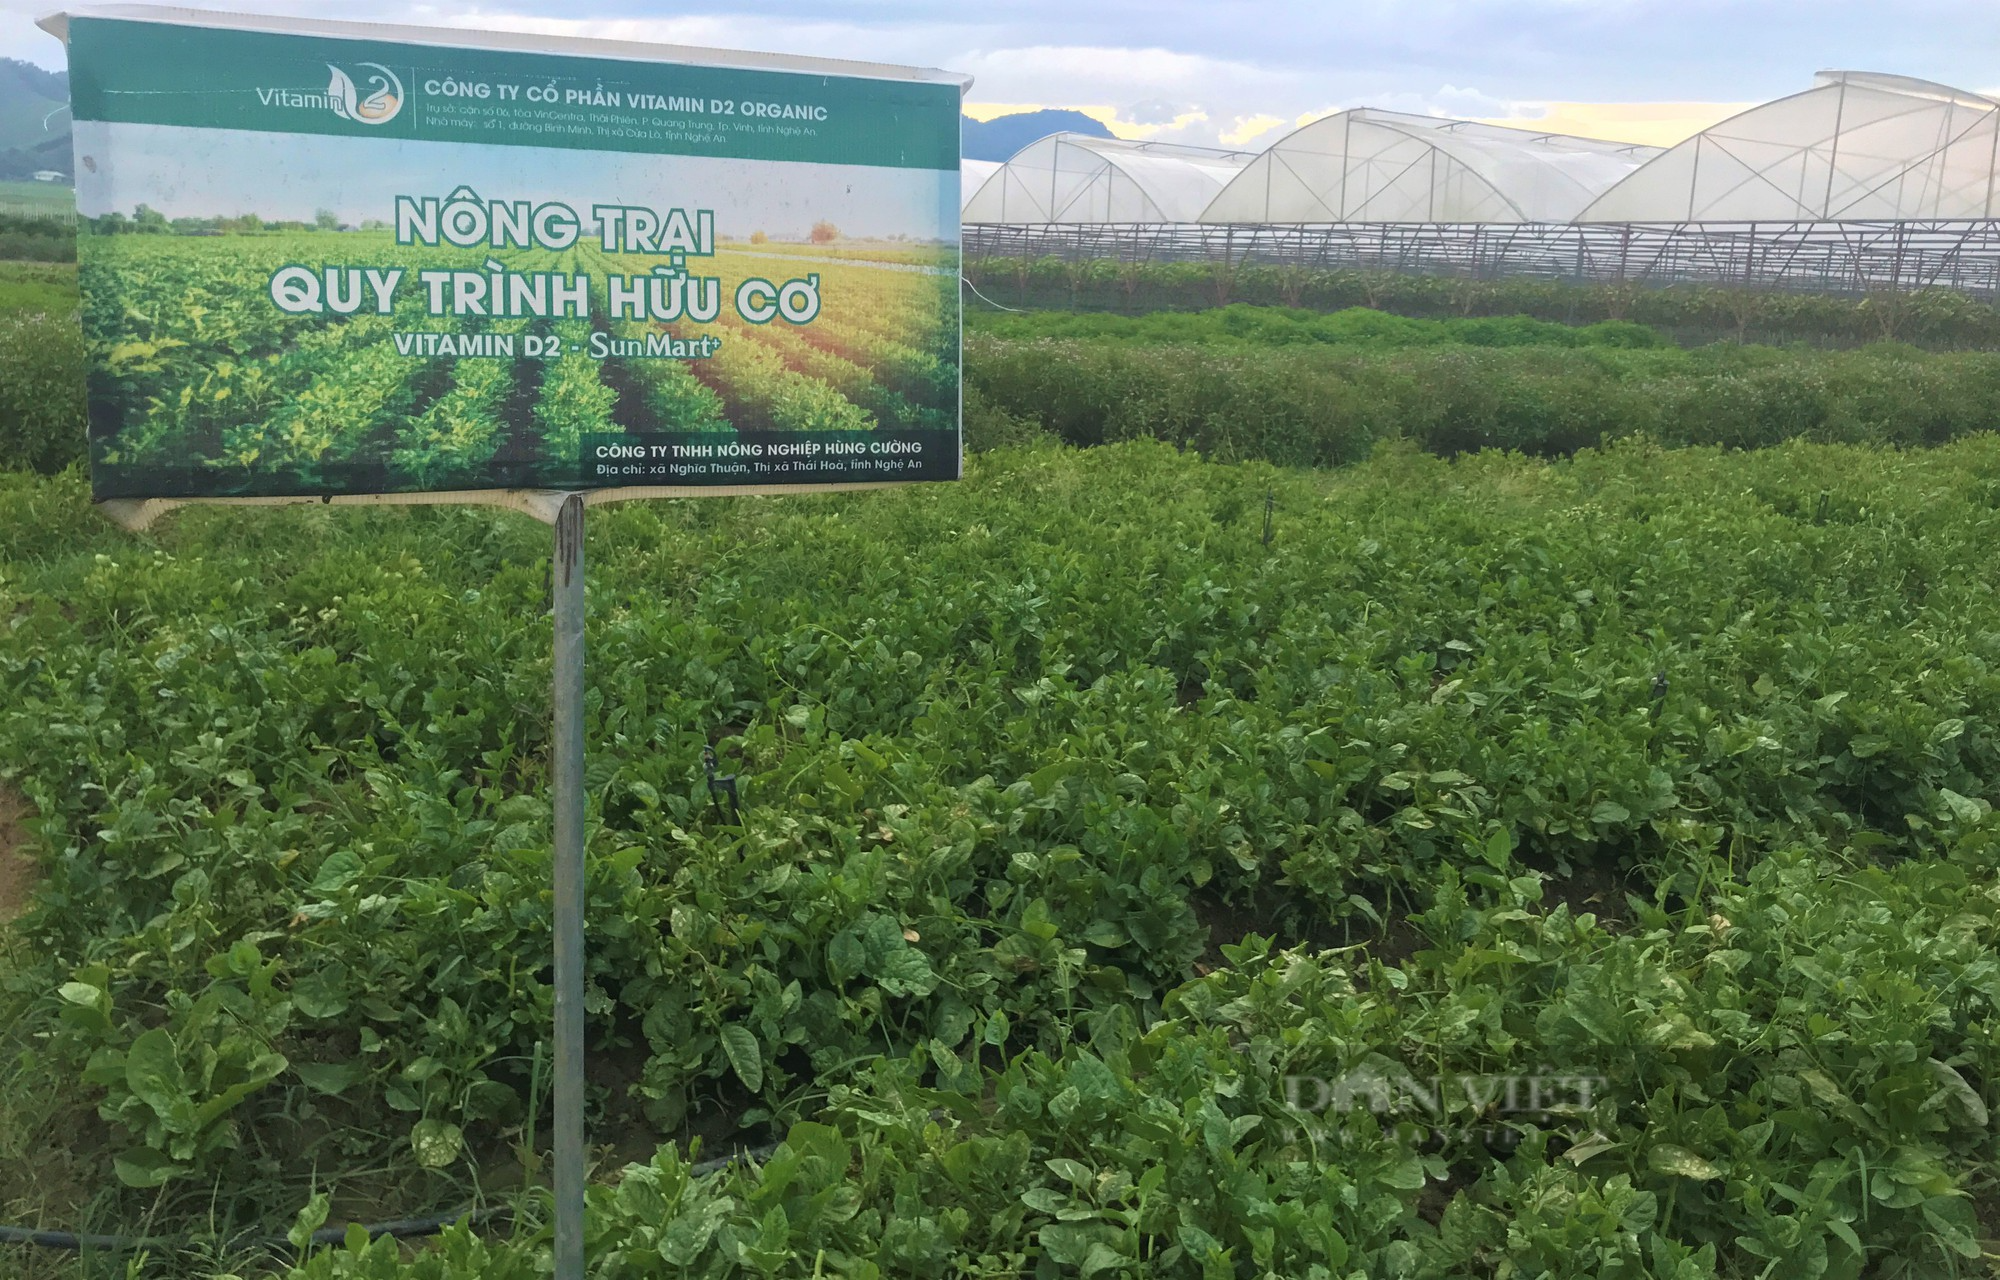 Sản xuất nông sản sạch ở Nghệ An: Trang trại công nghệ cao trồng đủ thứ rau, củ, quả sạch - Ảnh 2.